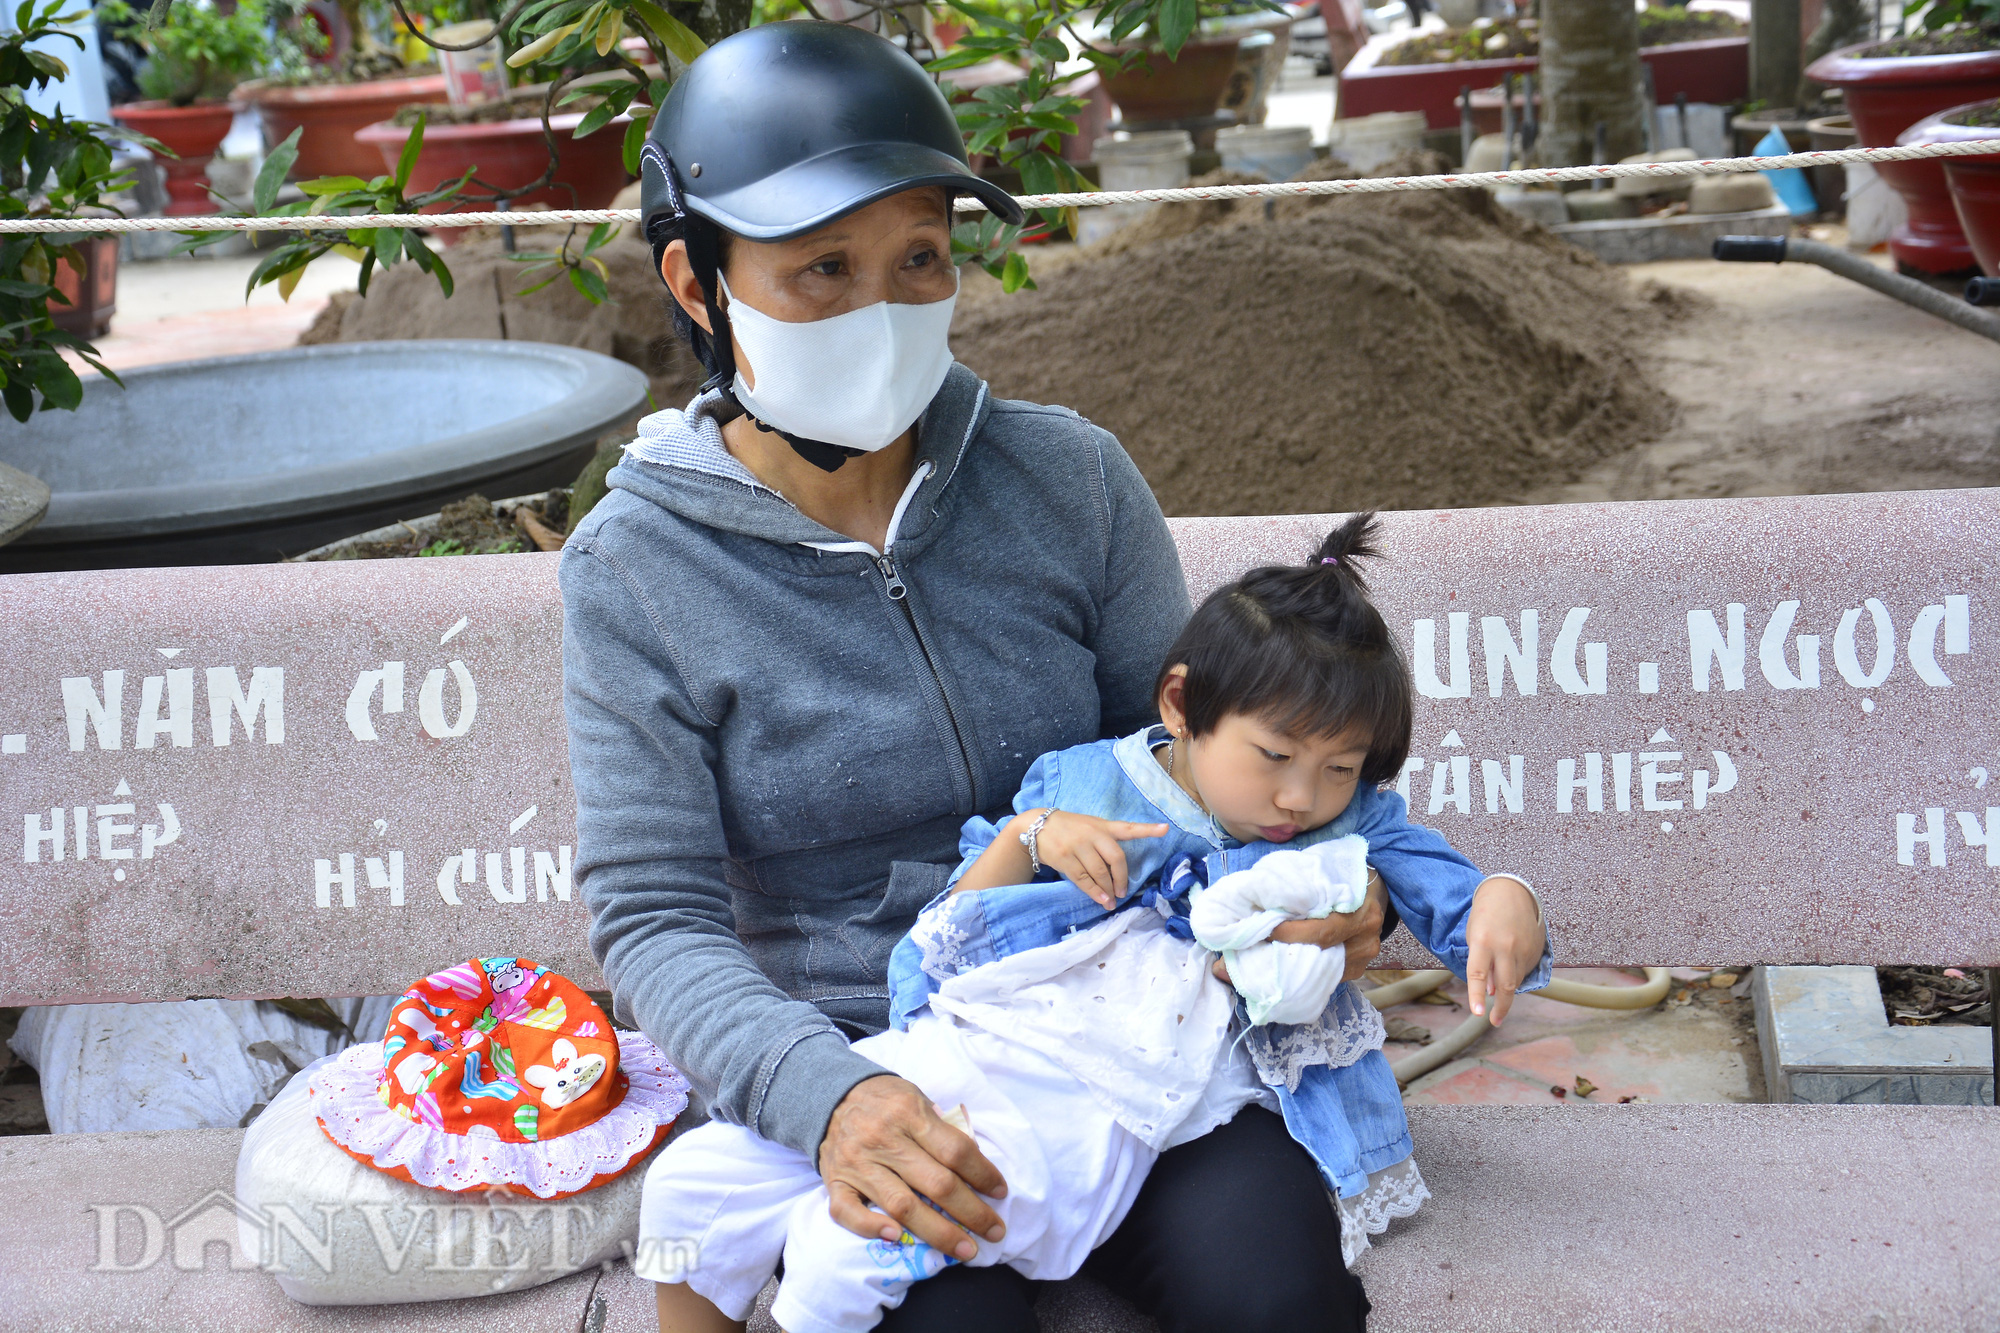 Kiên Giang: “ATM gạo” về vùng nông thôn, dân nghèo đỡ khổ - Ảnh 8.